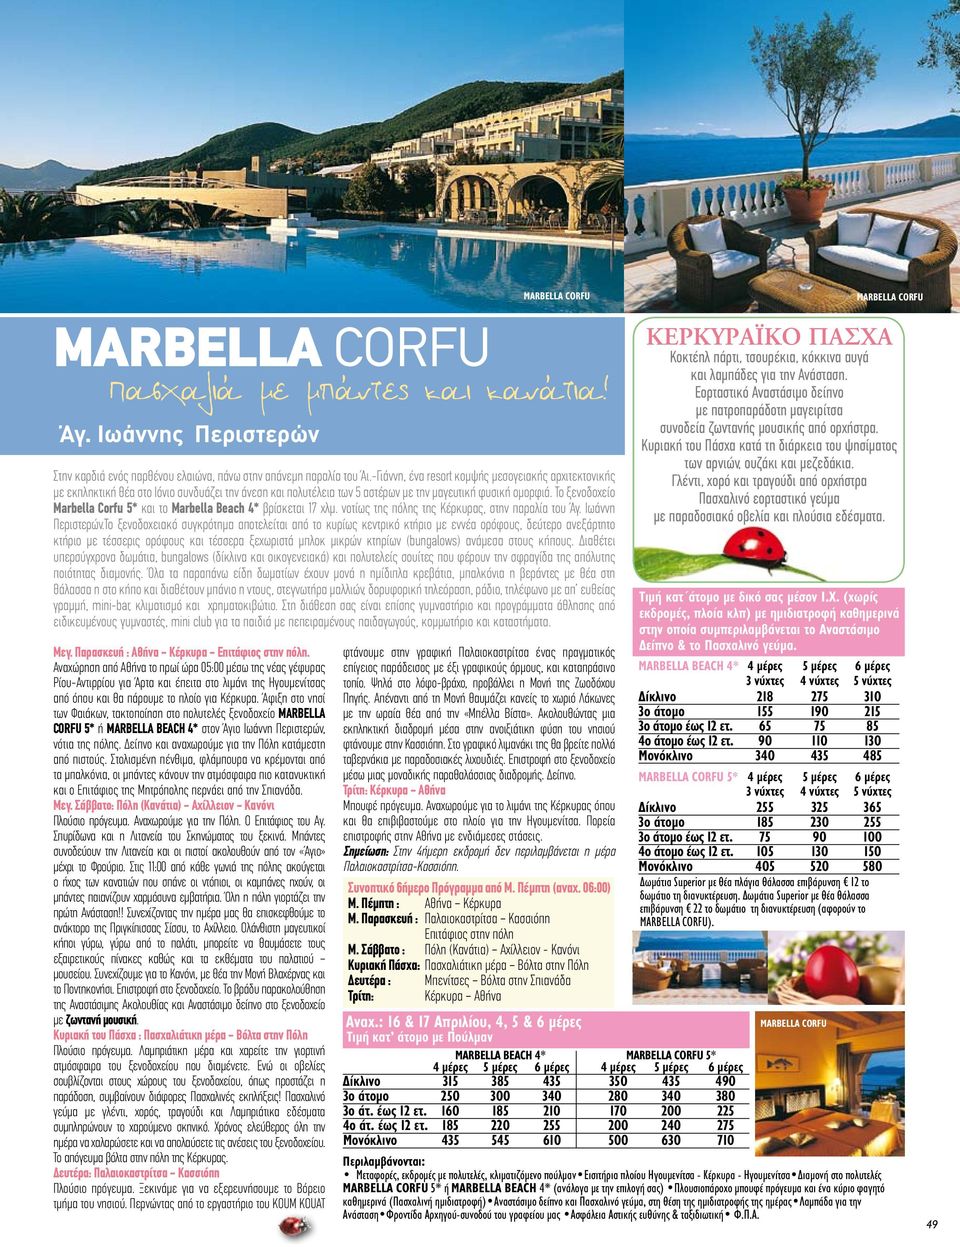 Το ξενοδοχείο Marbella Corfu 5* και το Marbella Beach 4* βρίσκεται 17 χλμ. νοτίως της πόλης της Κέρκυρας, στην παραλία του Άγ. Ιωάννη Περιστερών.